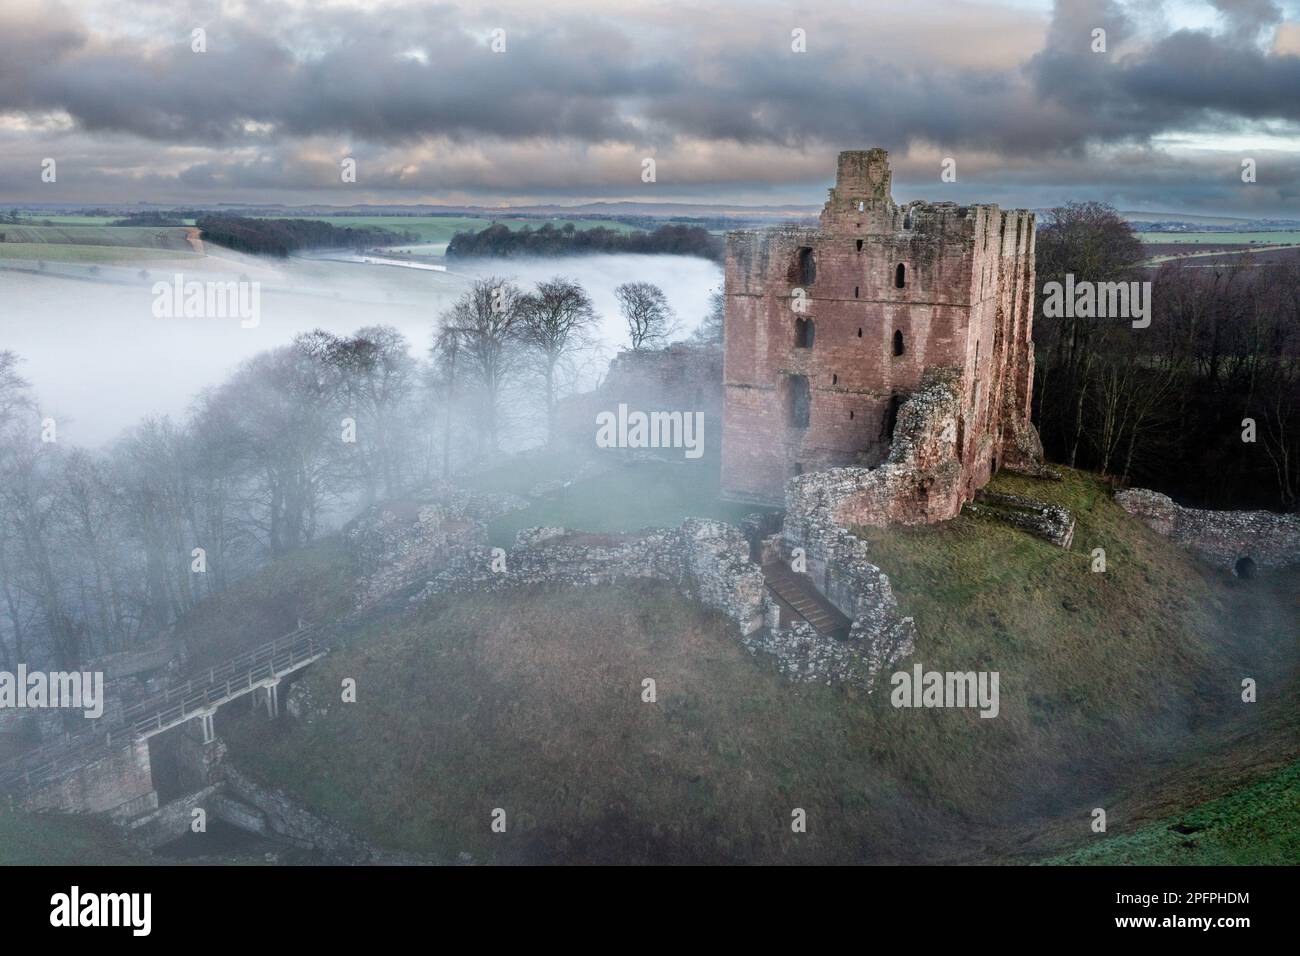 La brume sur la rivière entoure le château de Norham, situé au-dessus de la rivière Tweed qui garde la frontière anglo-écossaise, Northumberland, Angleterre, Royaume-Uni Banque D'Images